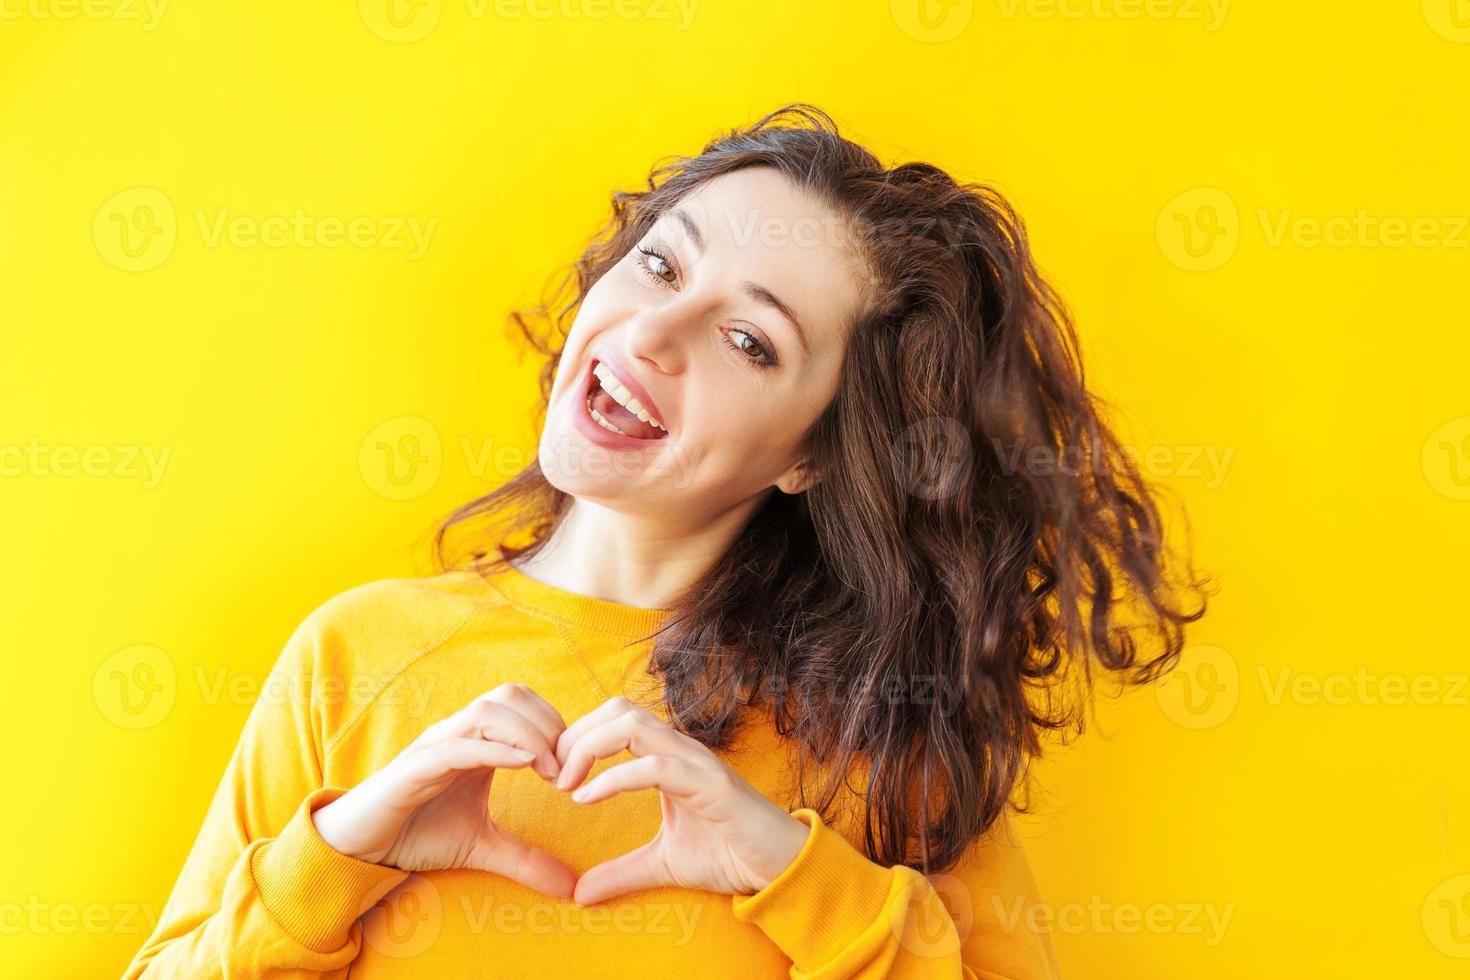 amor, forma de corazón, paz. retrato de belleza joven mujer positiva feliz que muestra el signo del corazón con las manos sobre fondo amarillo aislado. chica europea. emoción humana positiva expresión facial lenguaje corporal. foto